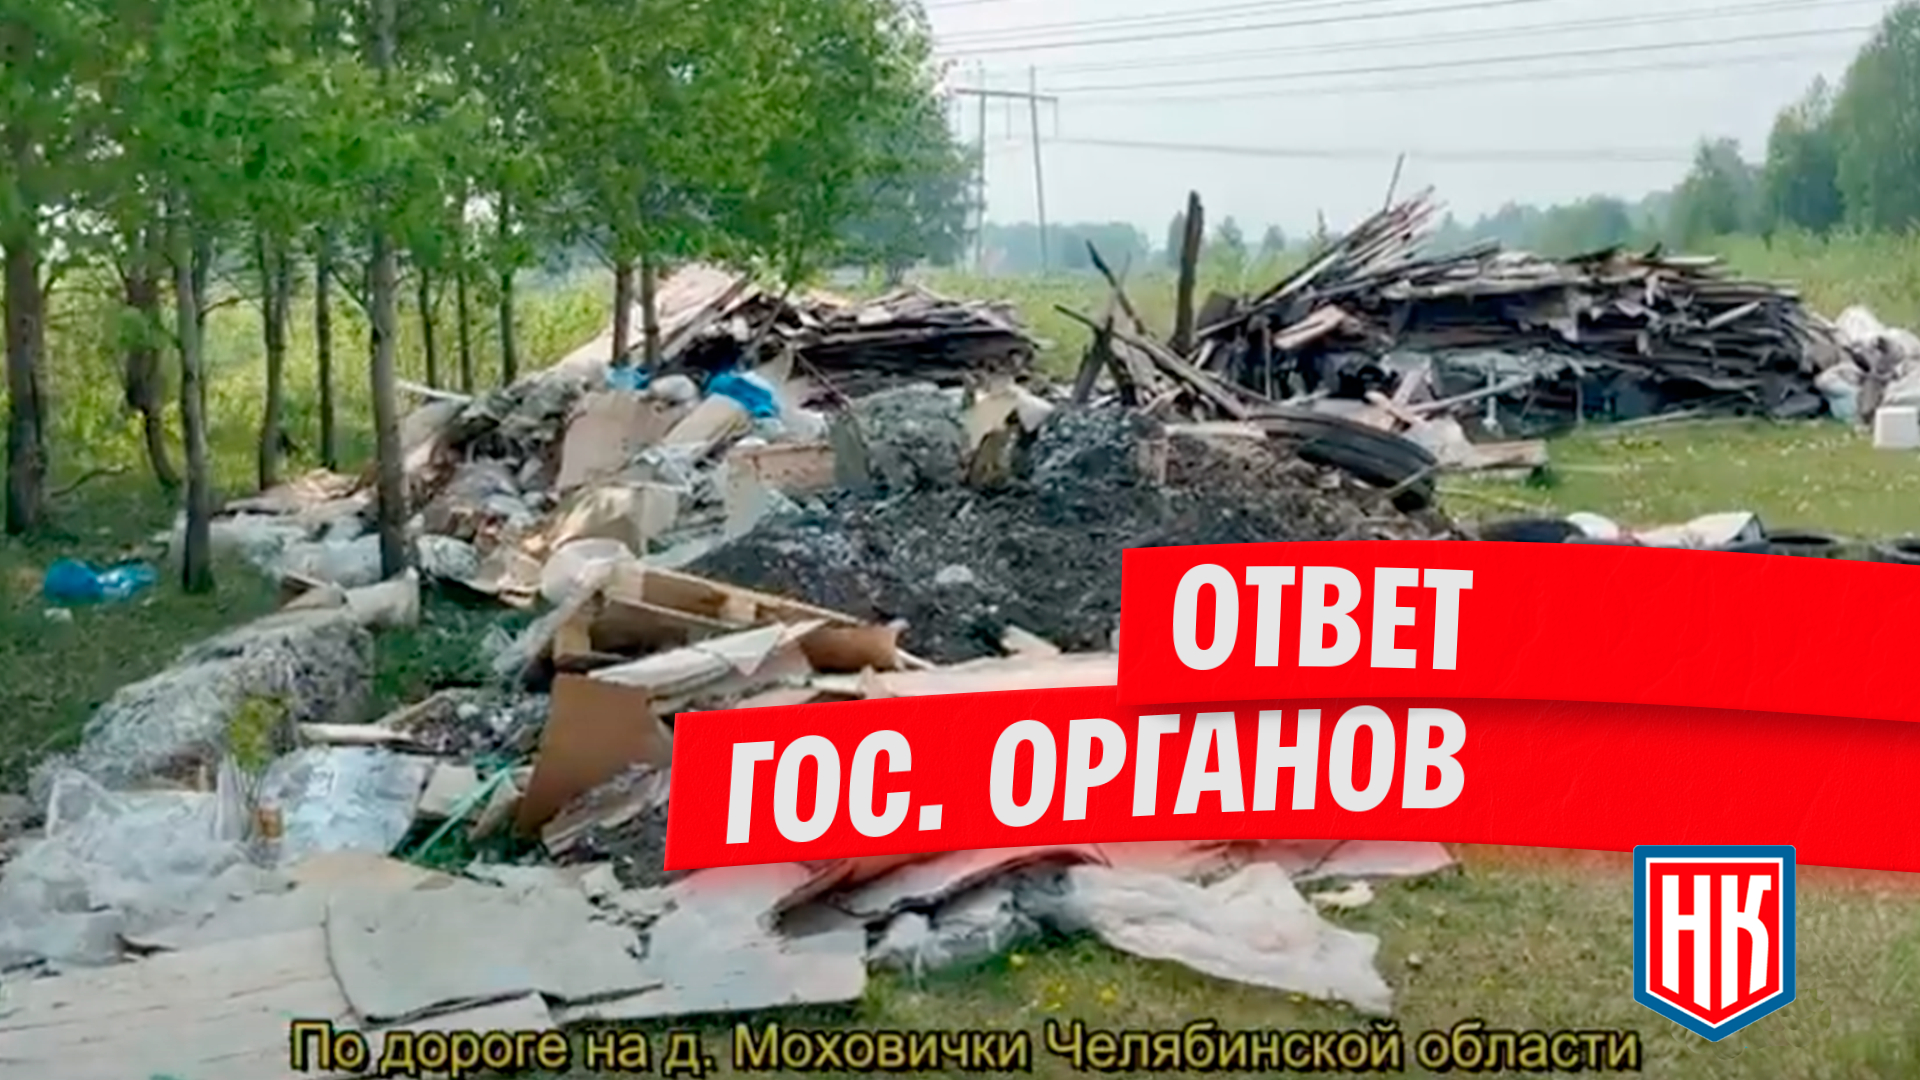 Ответ по дороге-свалке к деревне Моховички в Челябинской области